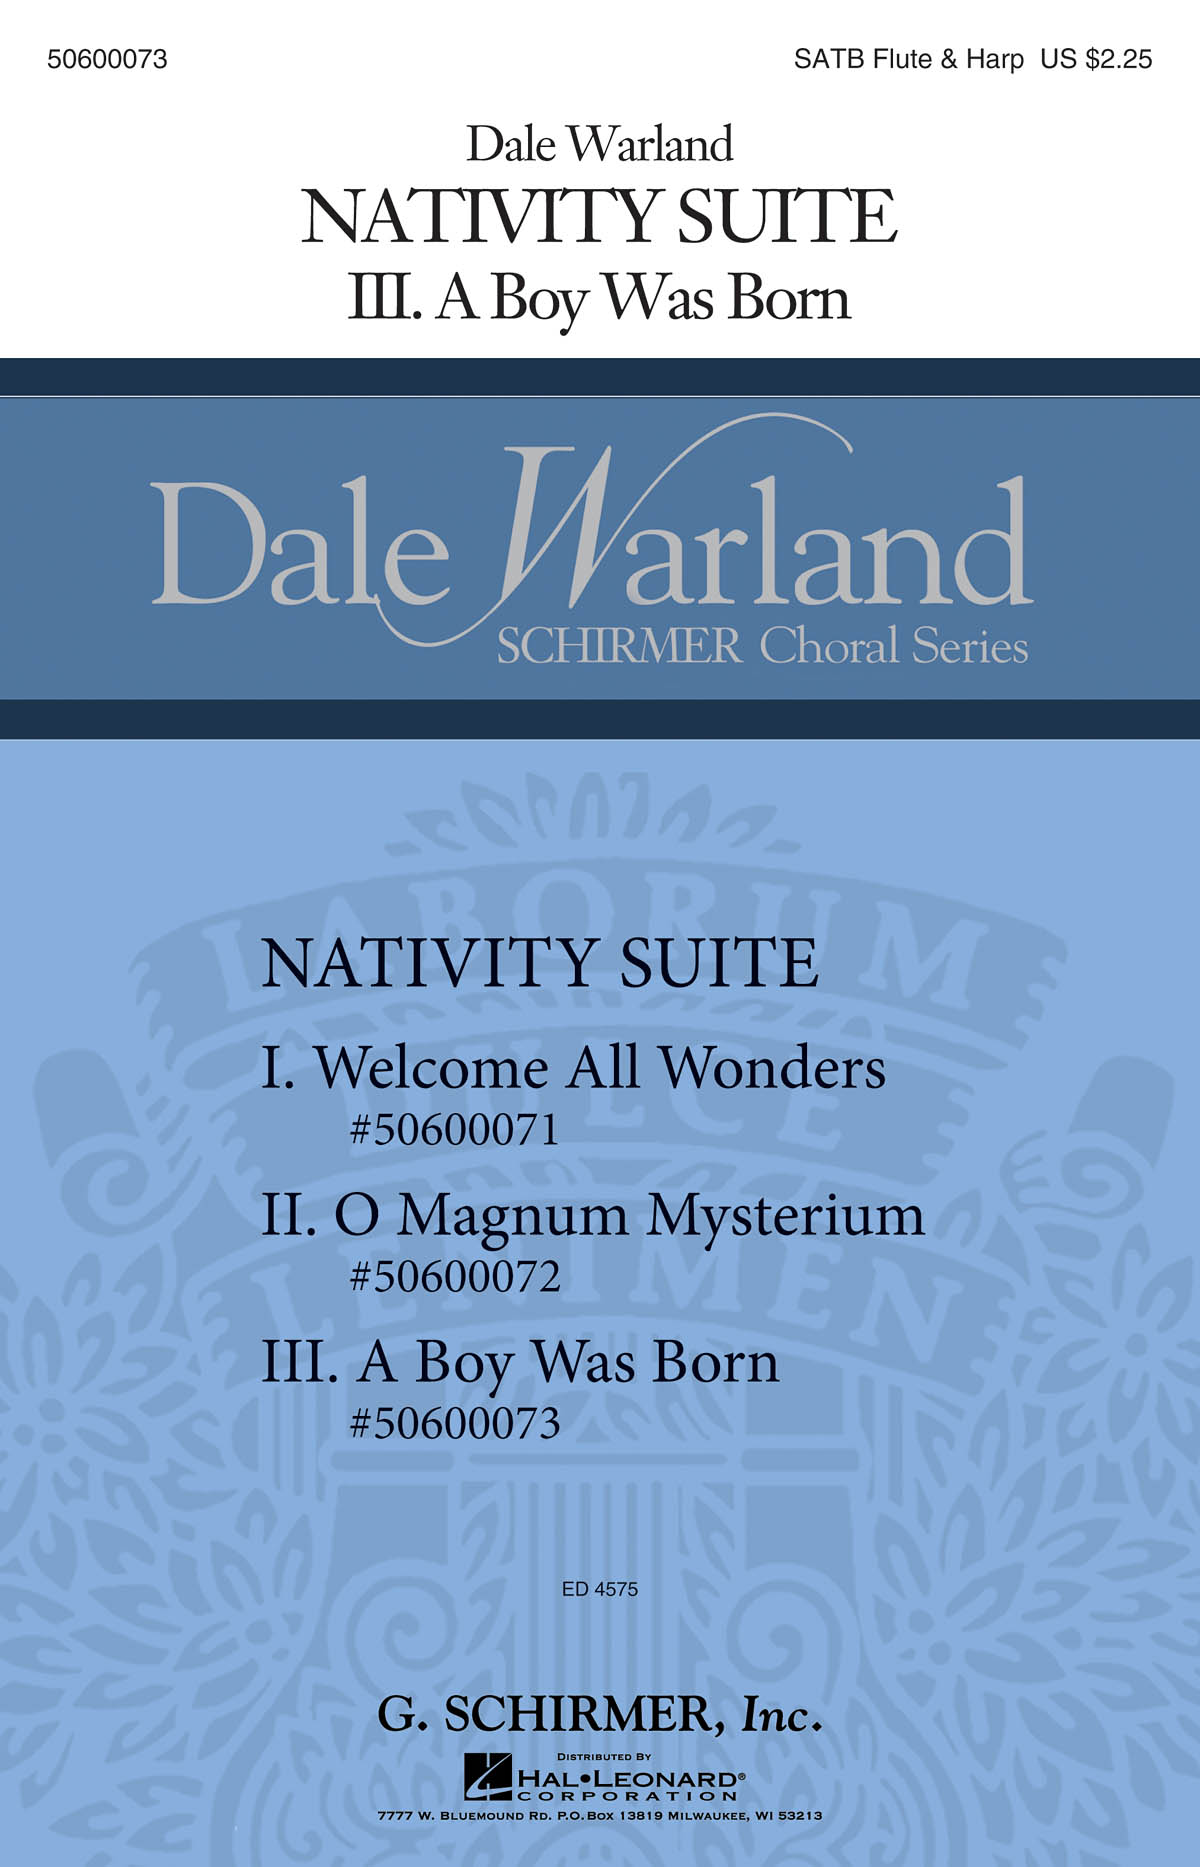 Dale Warland: A Boy Was Born